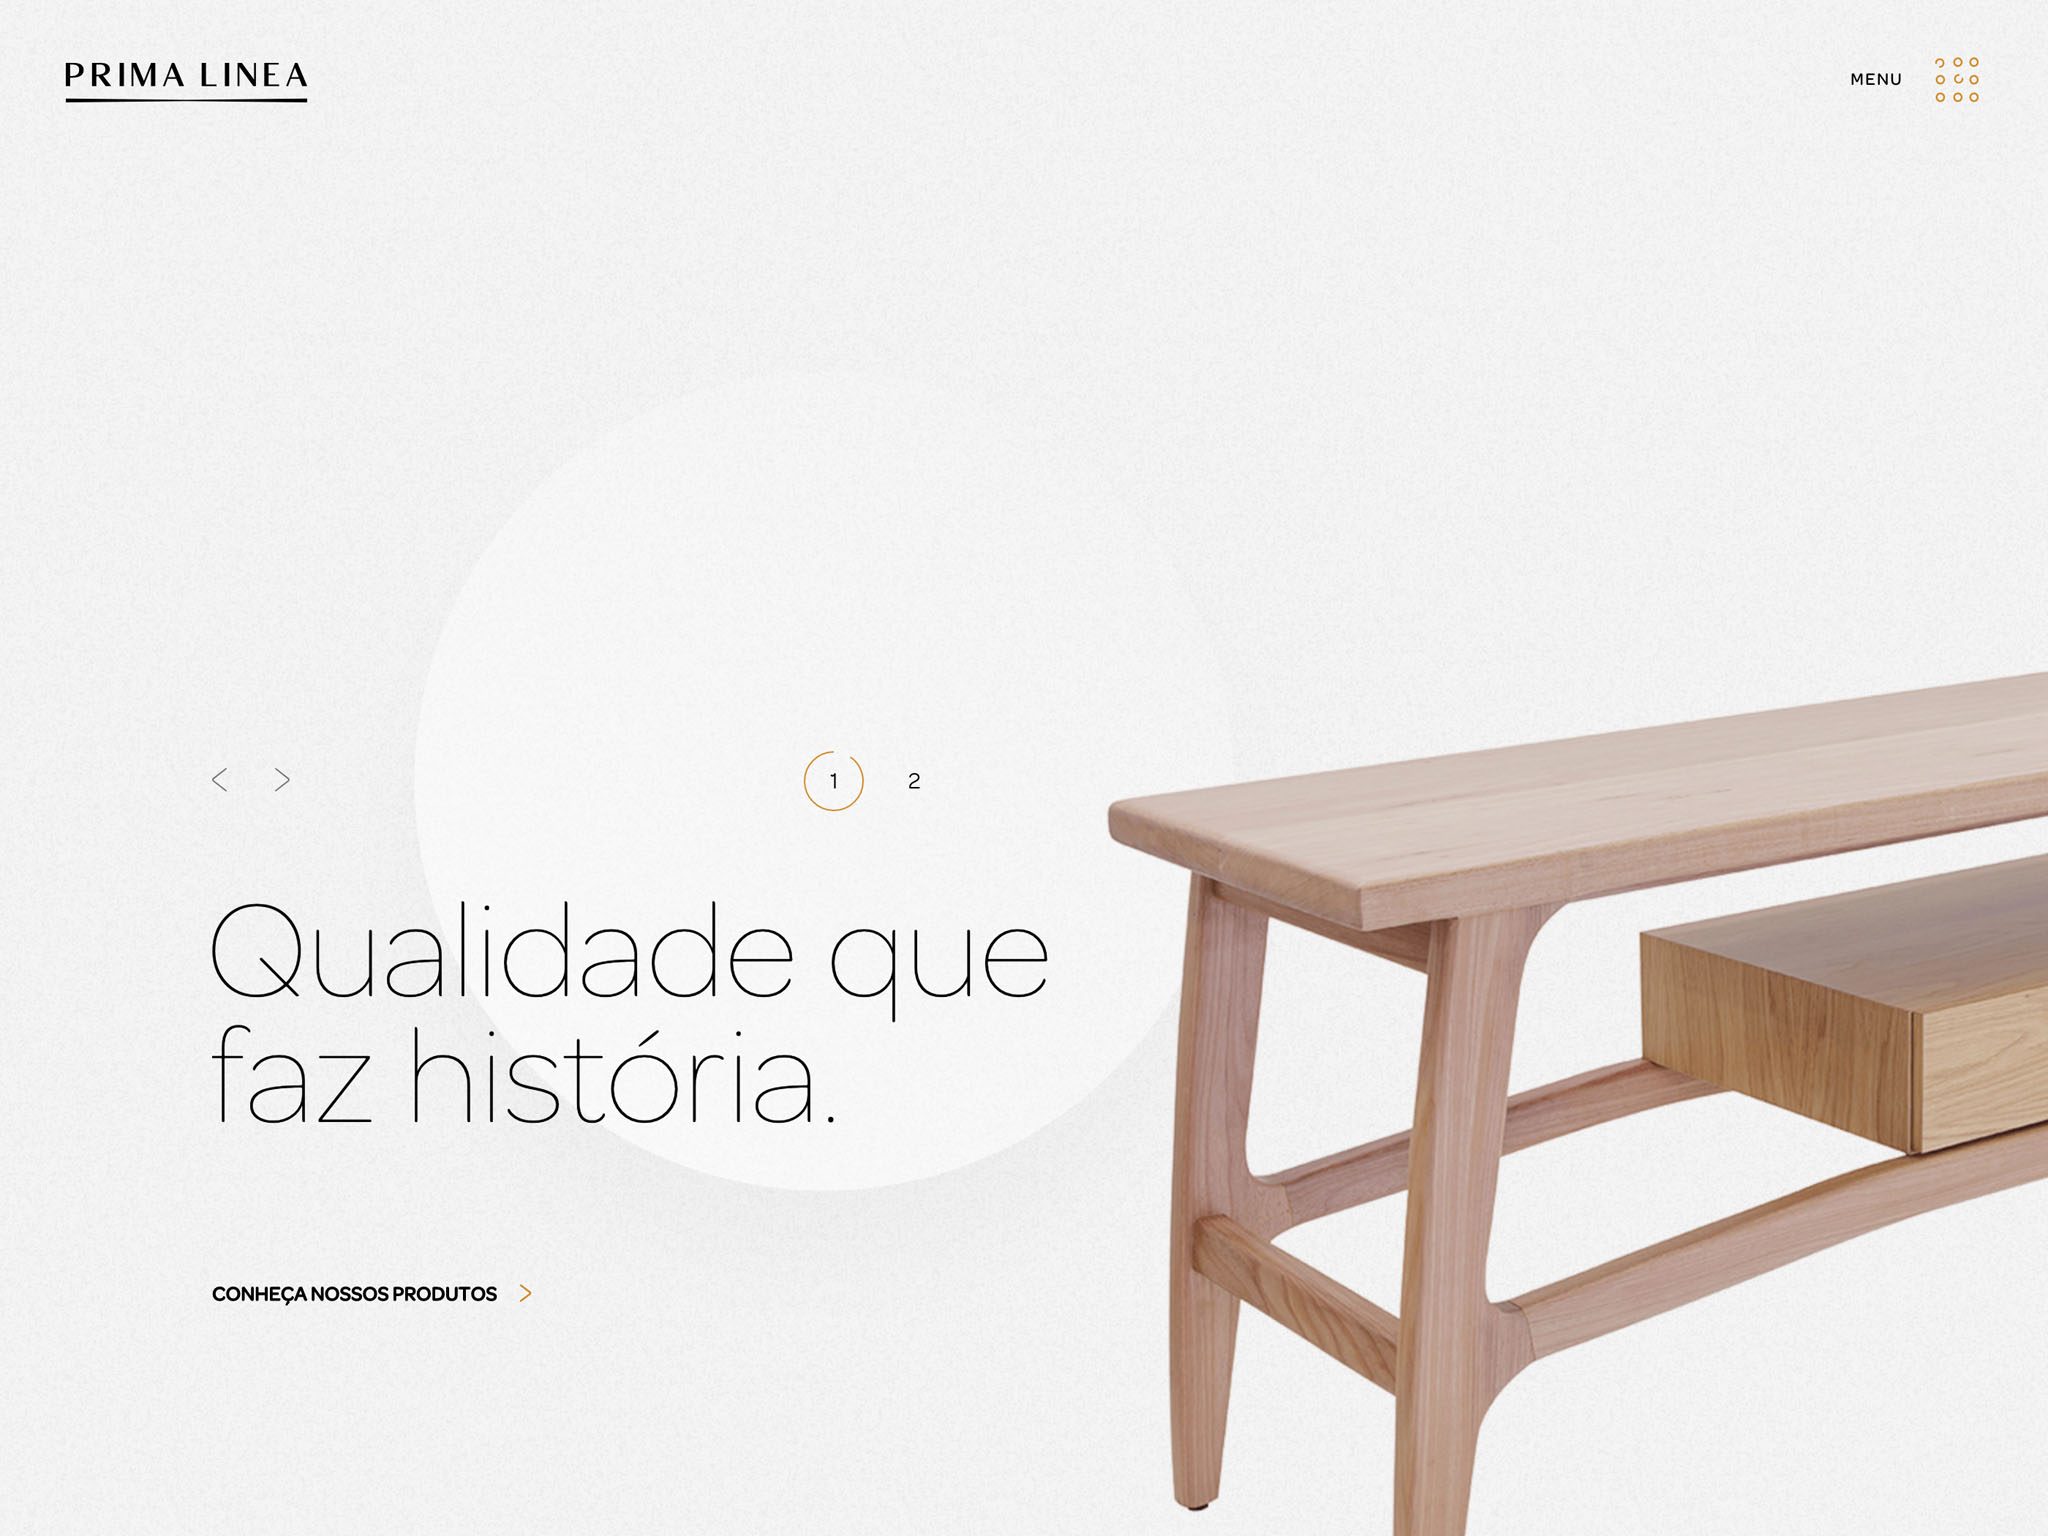 Prima Linea - Qualidade que faz história, móveis para a vida.